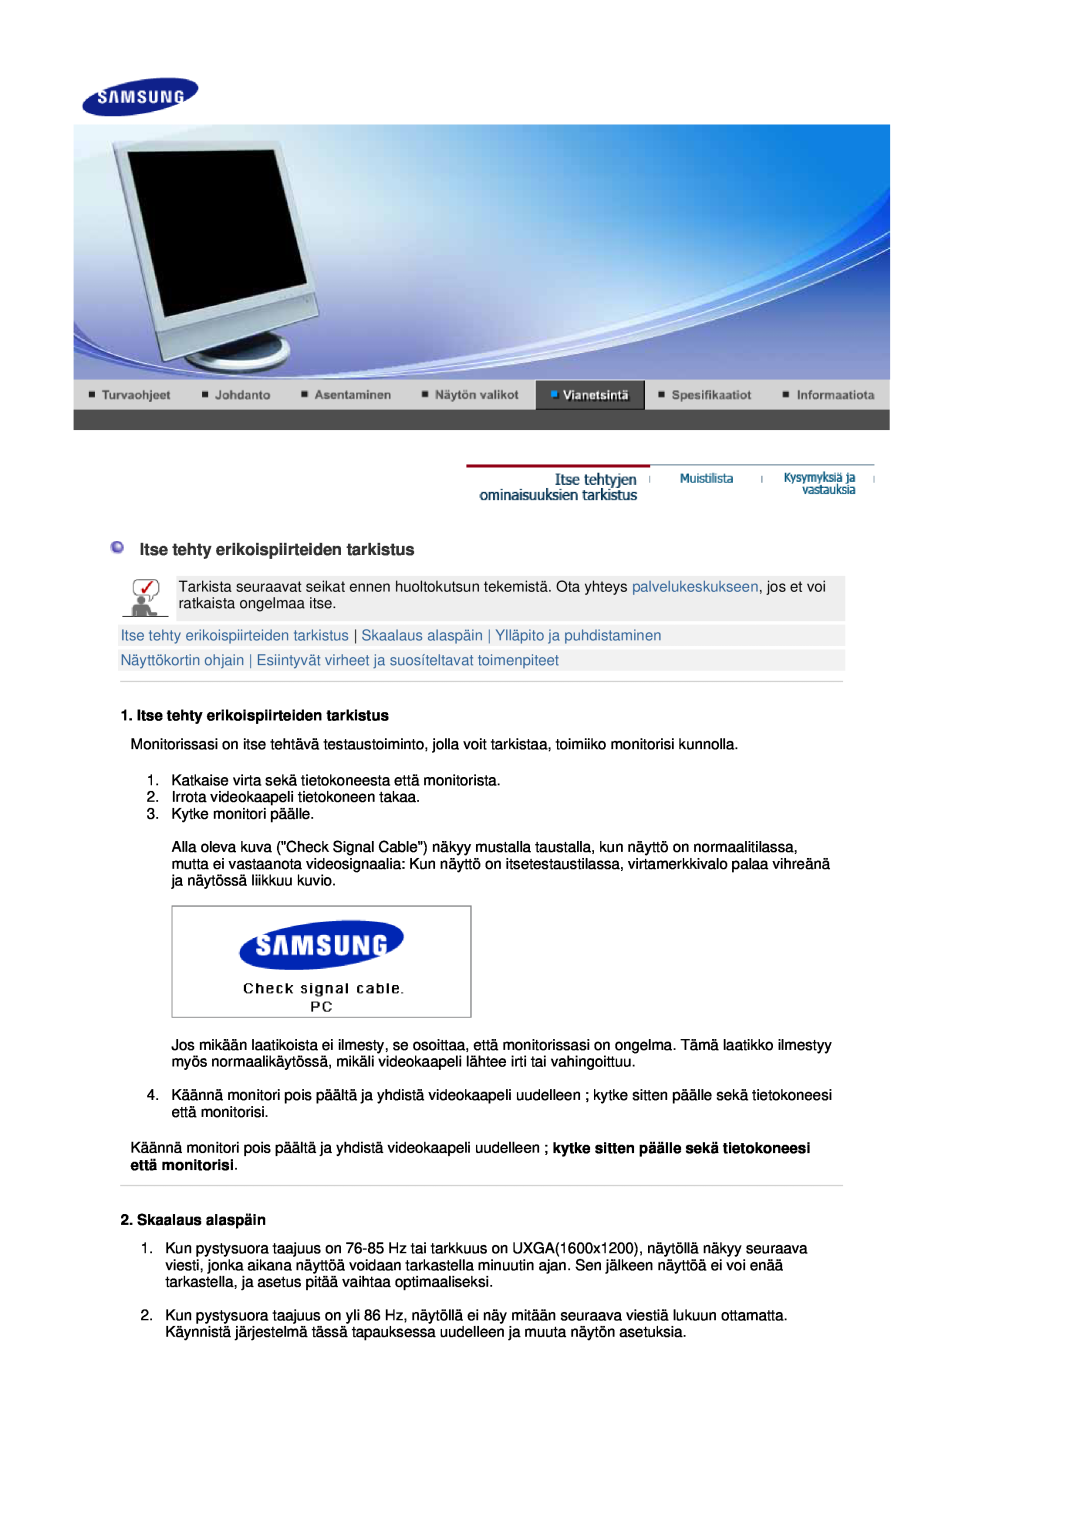 Samsung LS17DOASS/EDC, LS19DOASS/EDC manual Itse tehty erikoispiirteiden tarkistus, Skaalaus alaspäin 